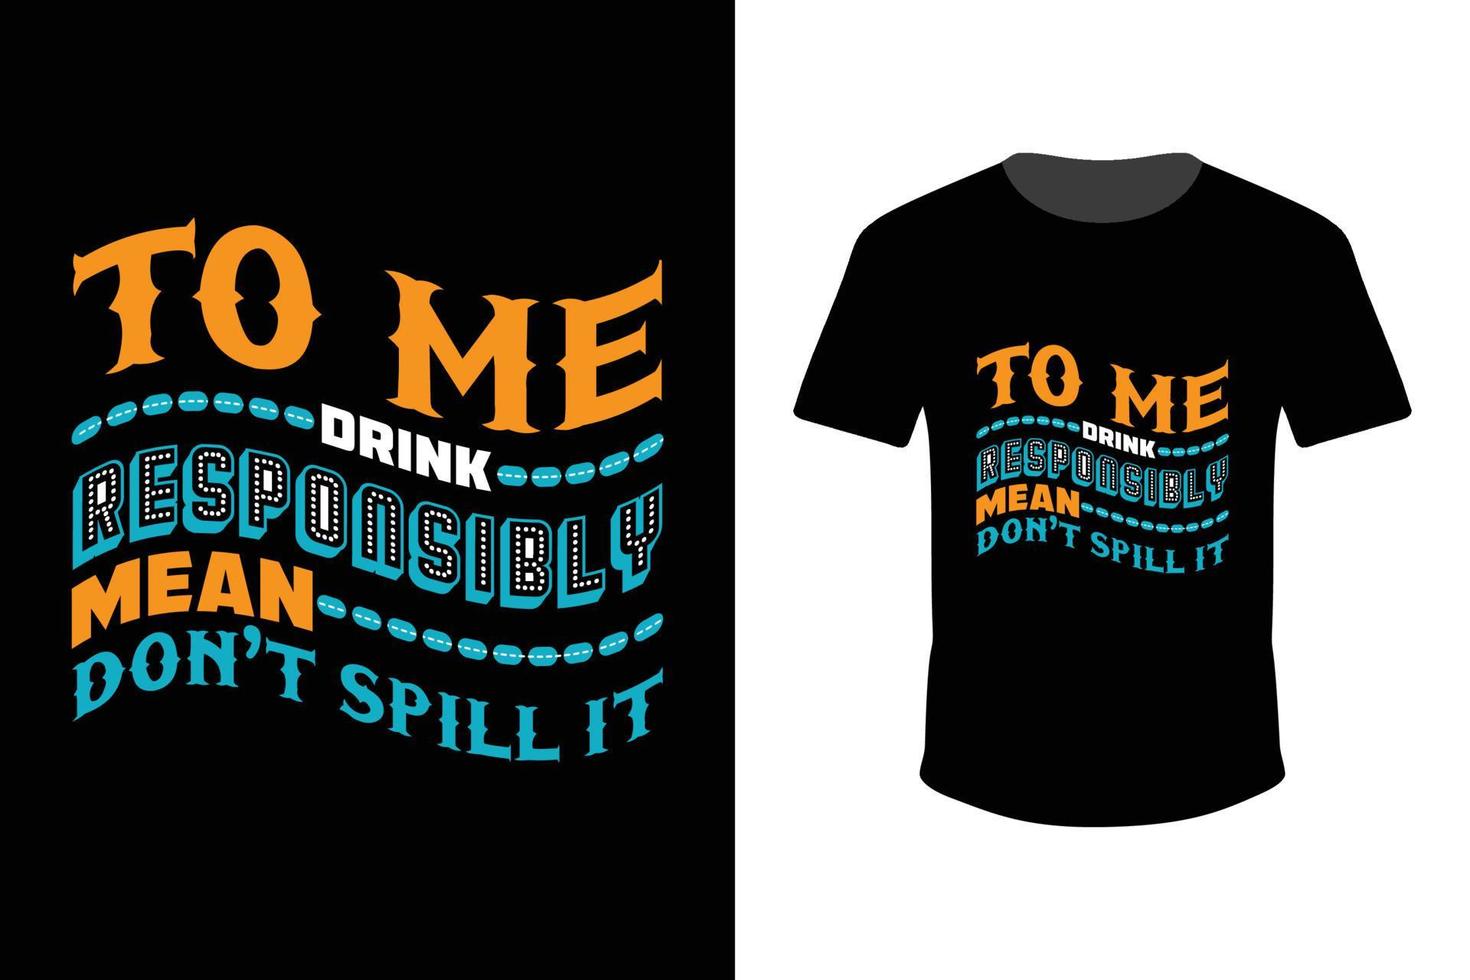 para mim, beber com responsabilidade significa não derramar - vetor de design de camiseta masculina para impressão